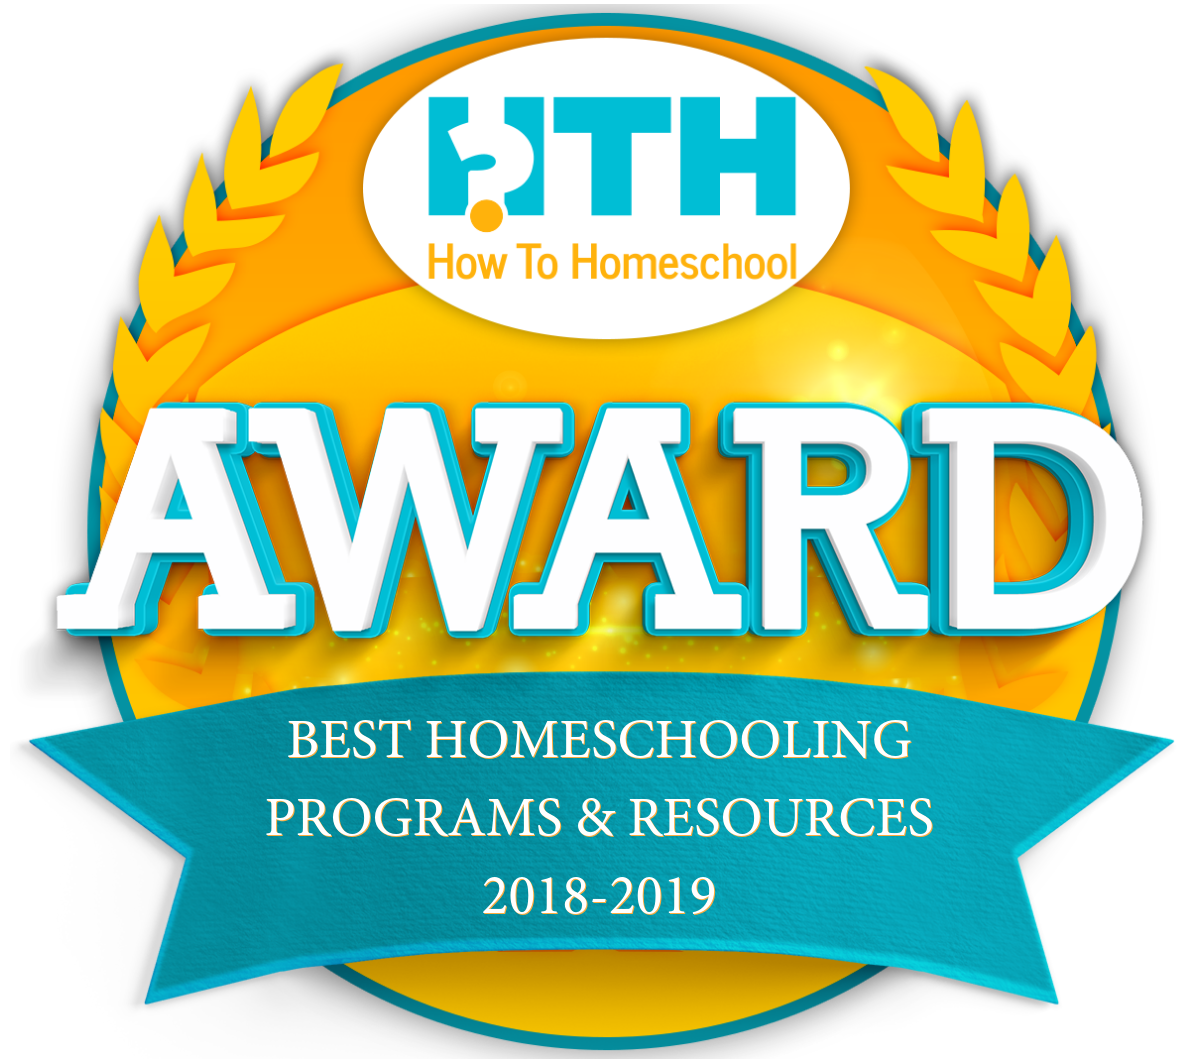 Best Homeschooling Program - Little Pim